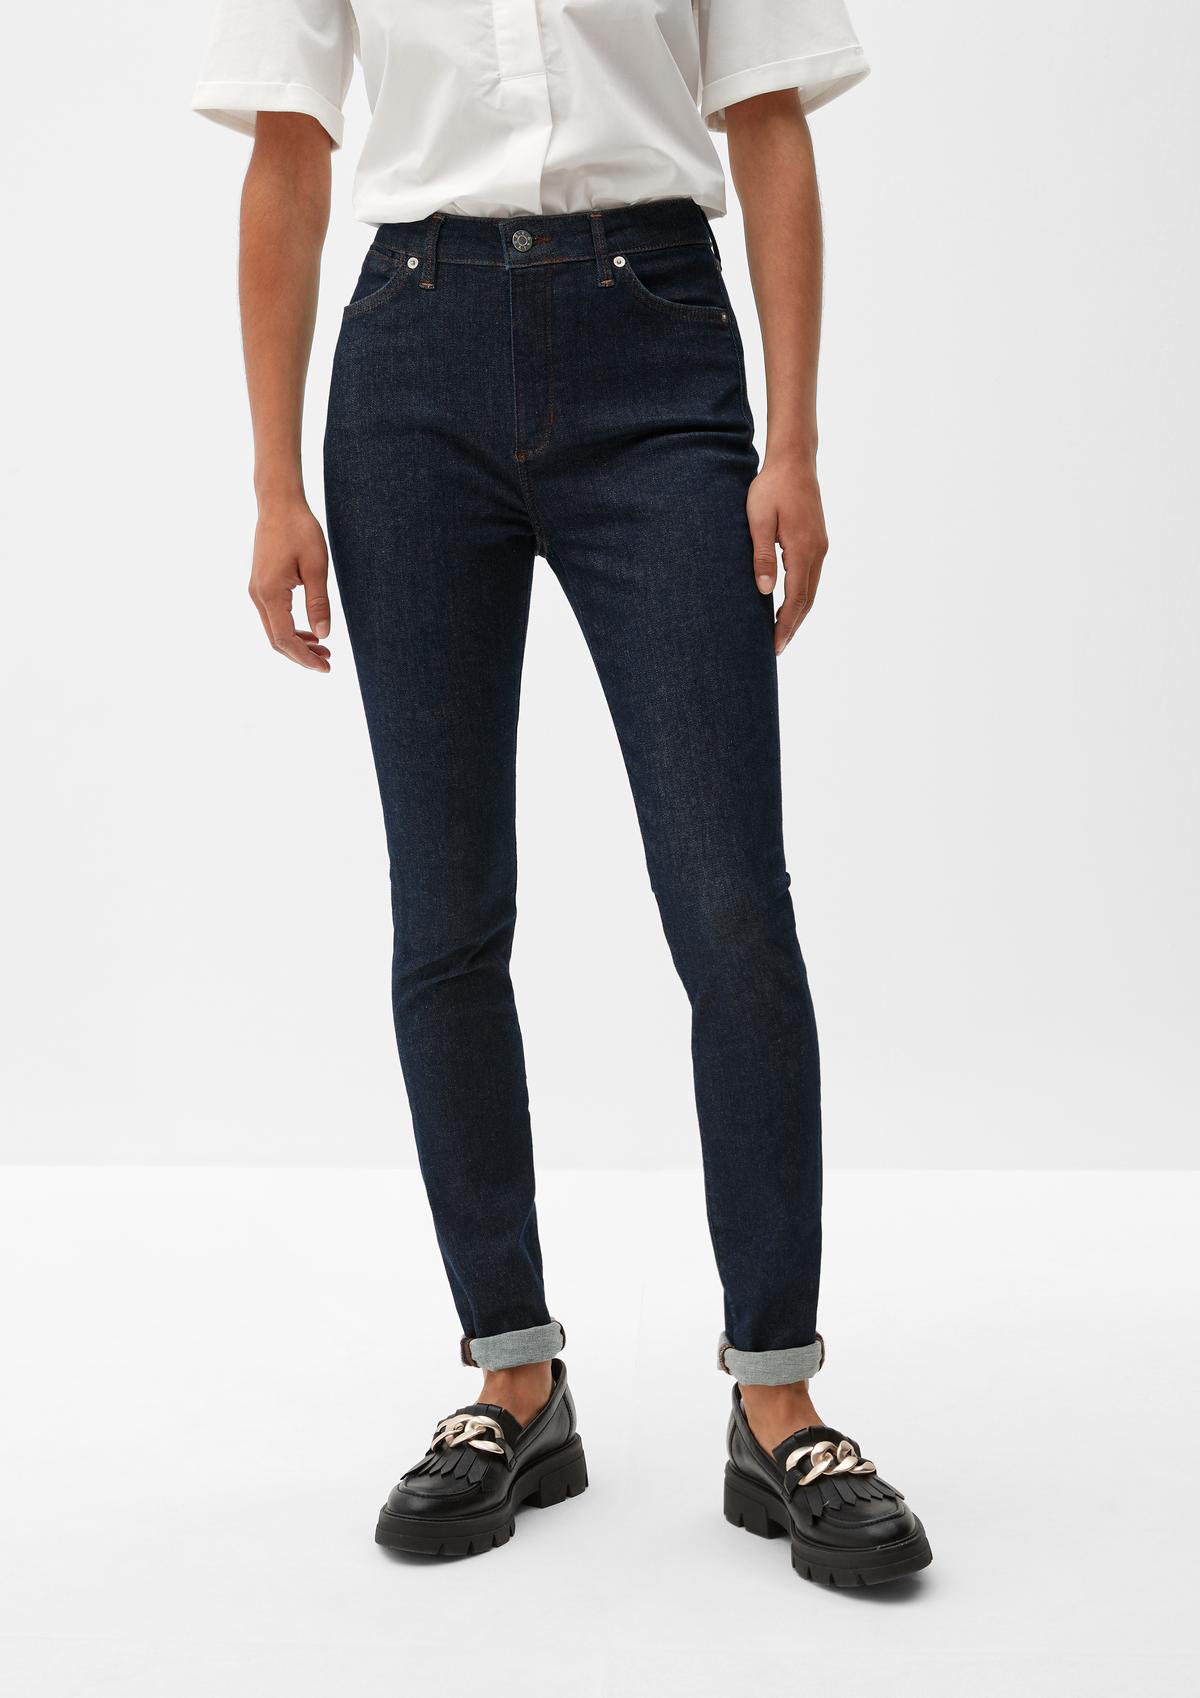 s.Oliver Skinny fit: super skinny jeans